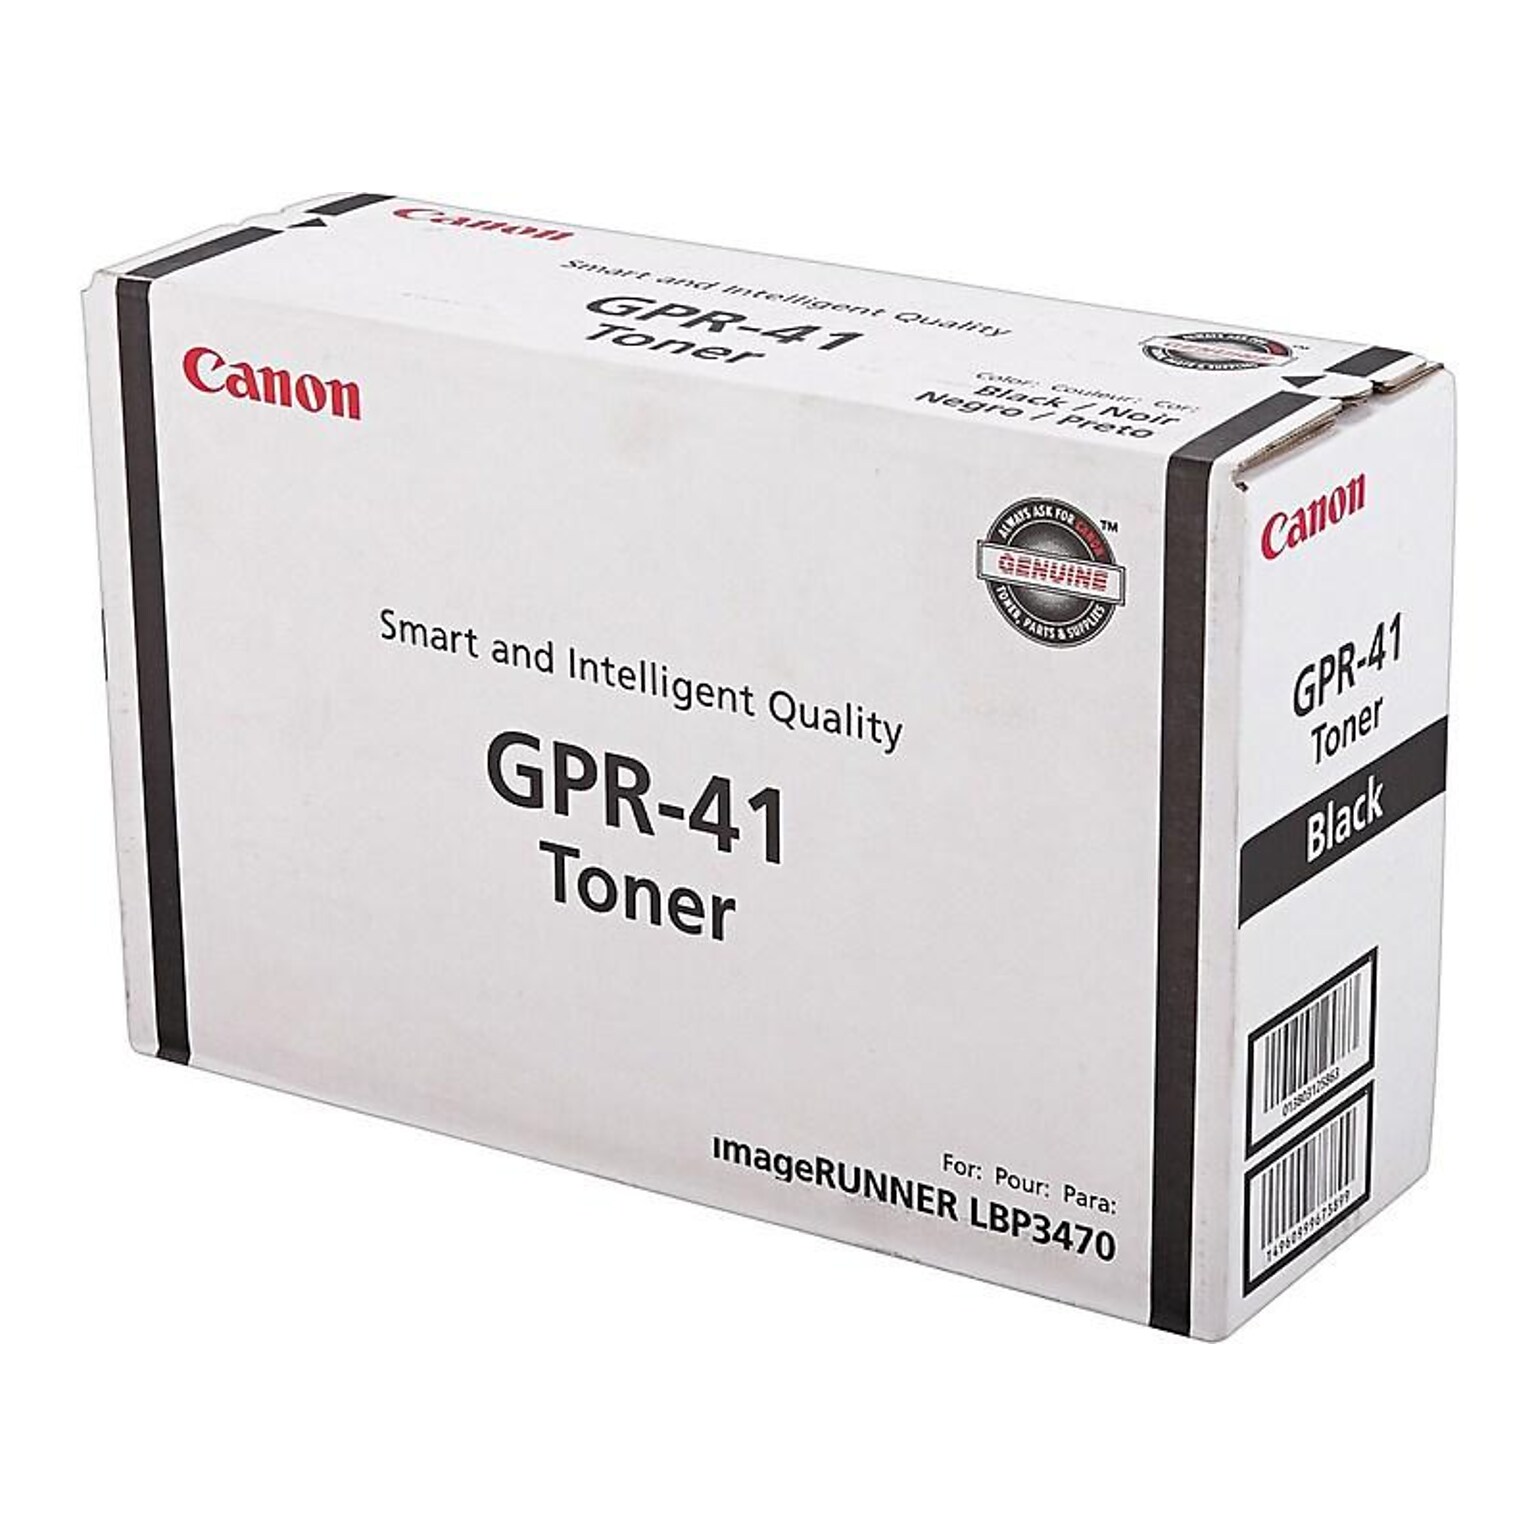 Canon GPR-41 Black Standard Yield Toner Cartridge (3480B005AA)